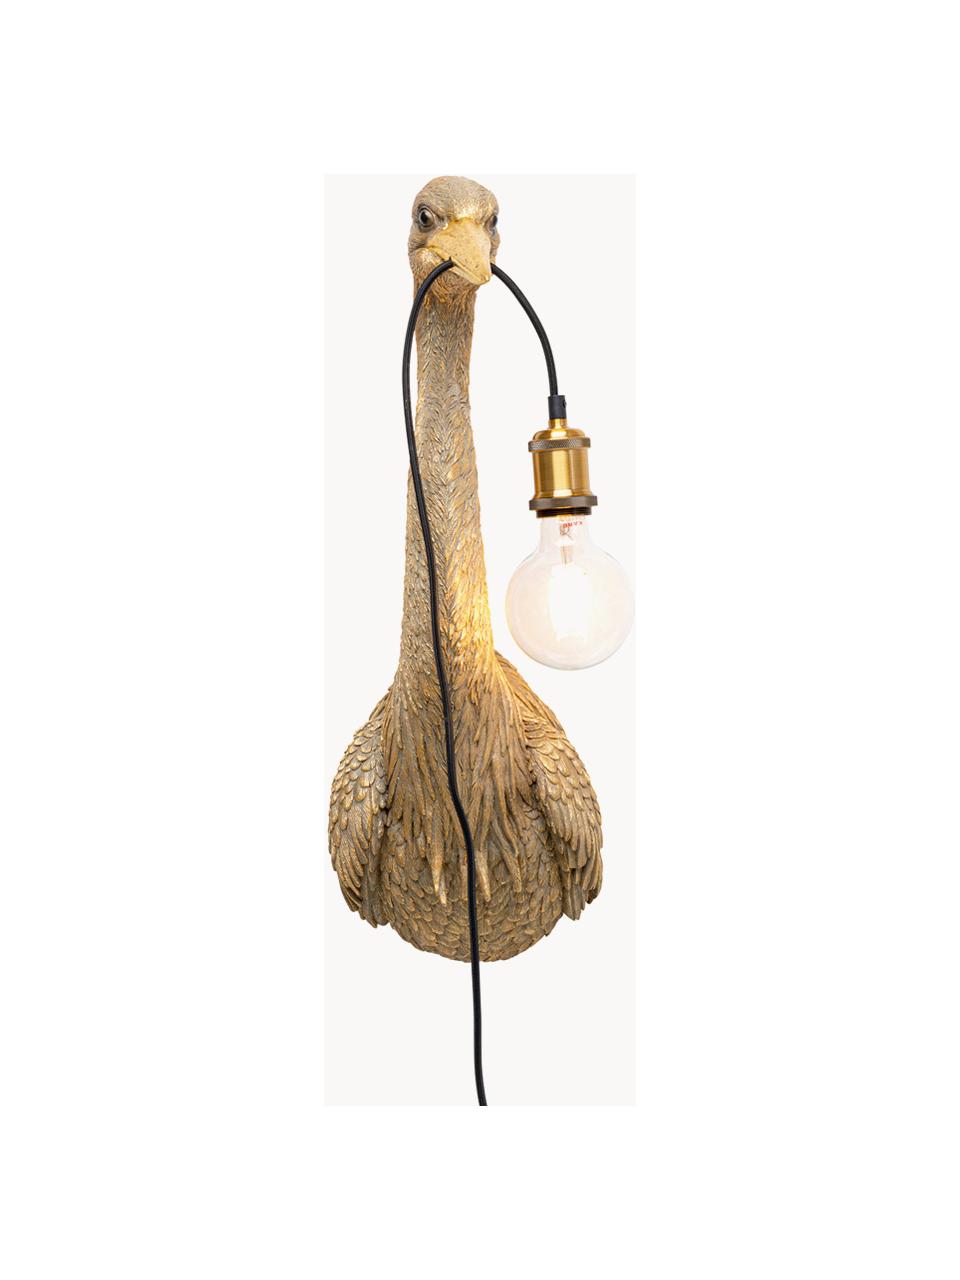 Grote handgemaakte wandlamp Heron met stekker, Lamp: polyresin, Fitting: gecoat metaal, Goudkleurig, D 26 x H 62 cm